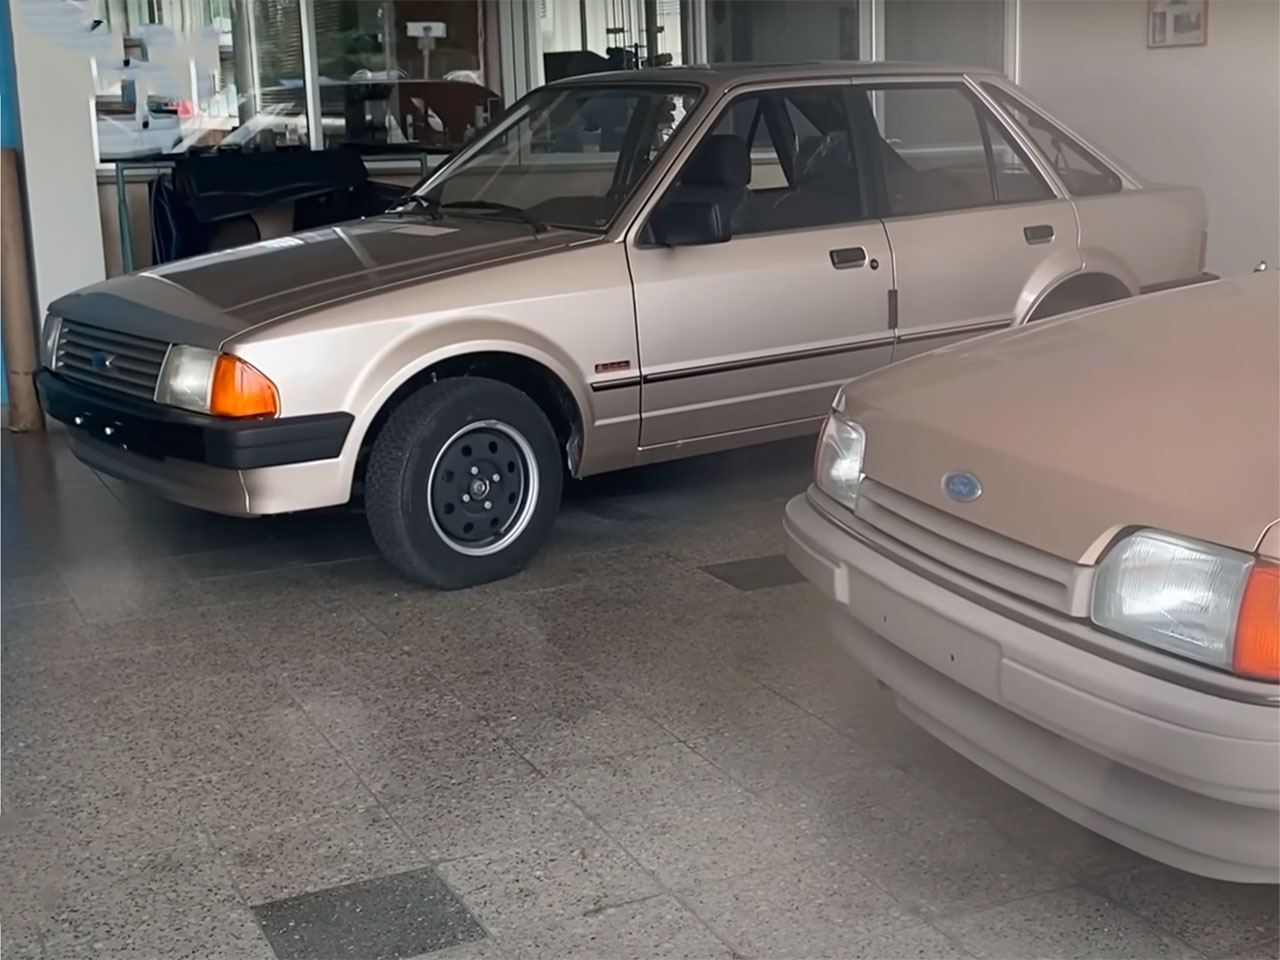 Ford Escort 0 km em concessionria fechada nos anos 80 na Alemanha